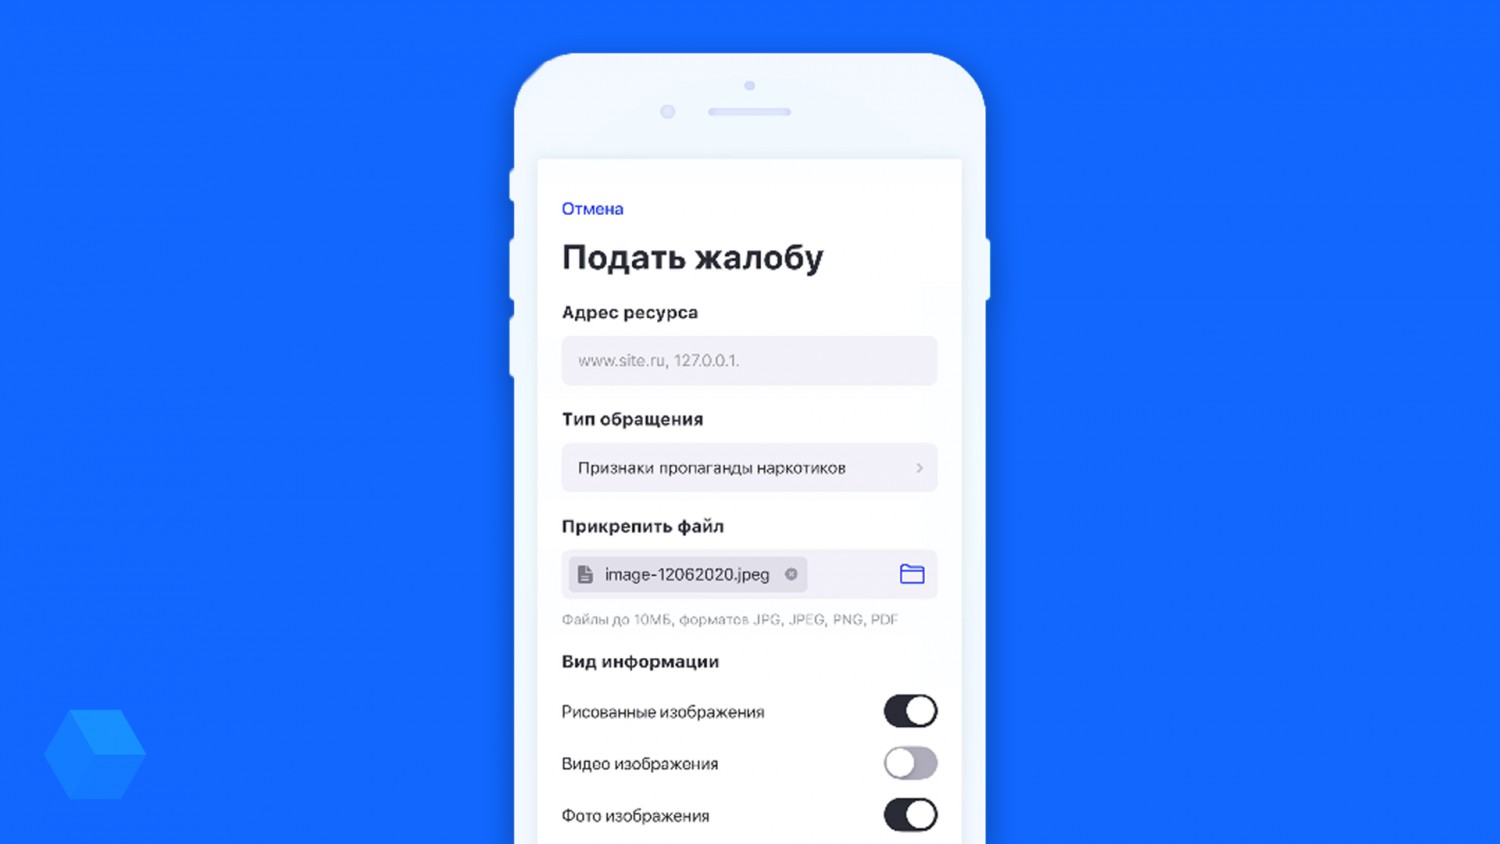 Роскомнадзор запустил приложение, позволяющее жаловаться на сайты с противоправным контентом